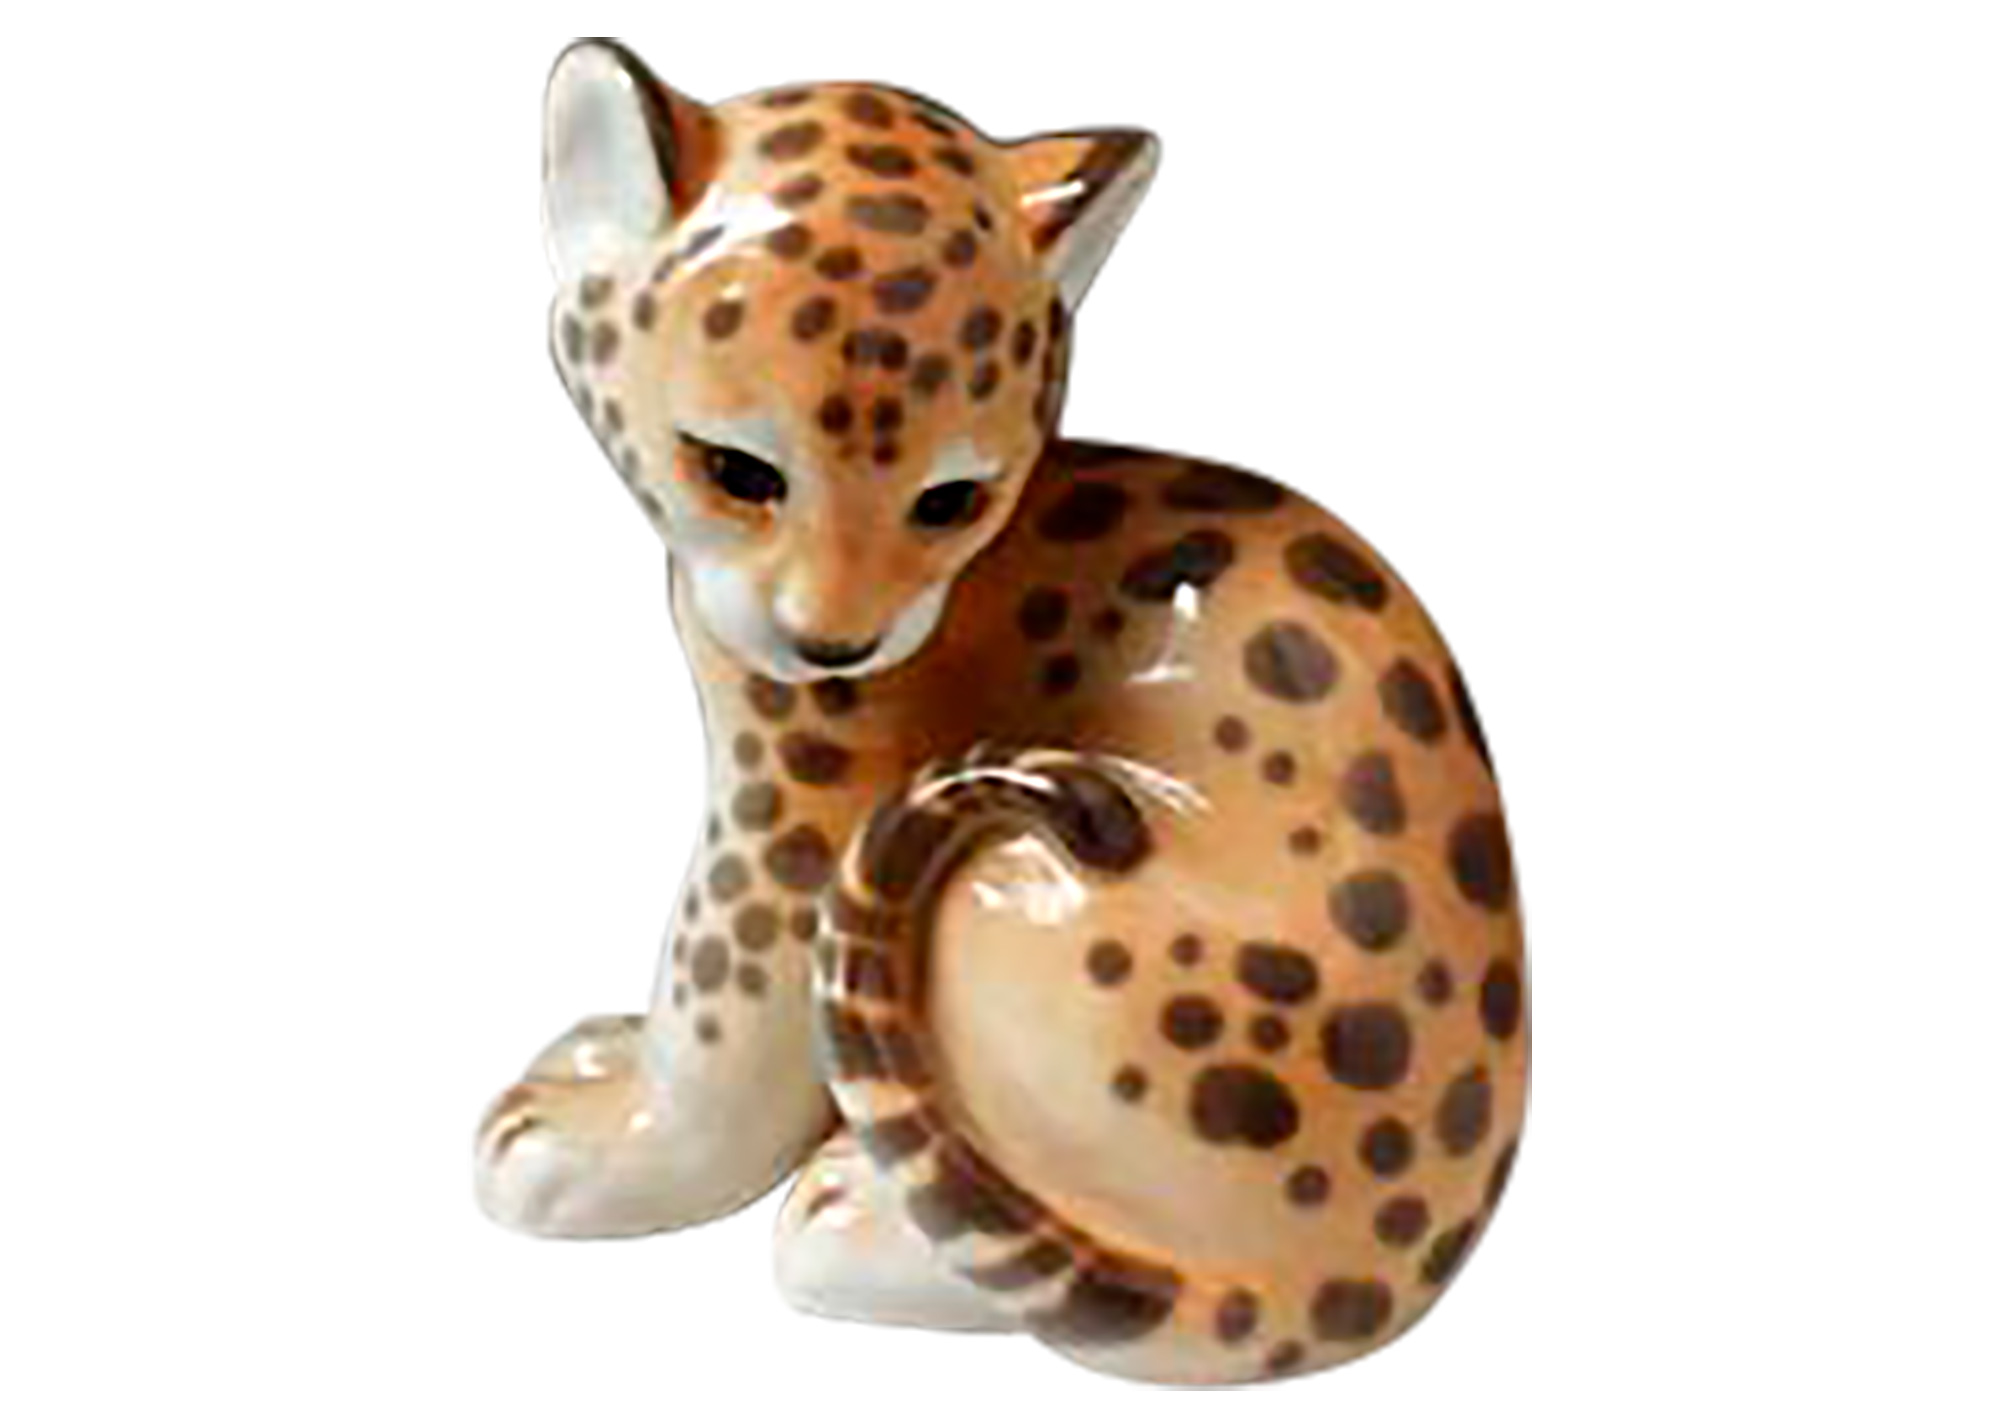 Buy Фарфоровая фигурка "Маленький леопард" at GoldenCockerel.com